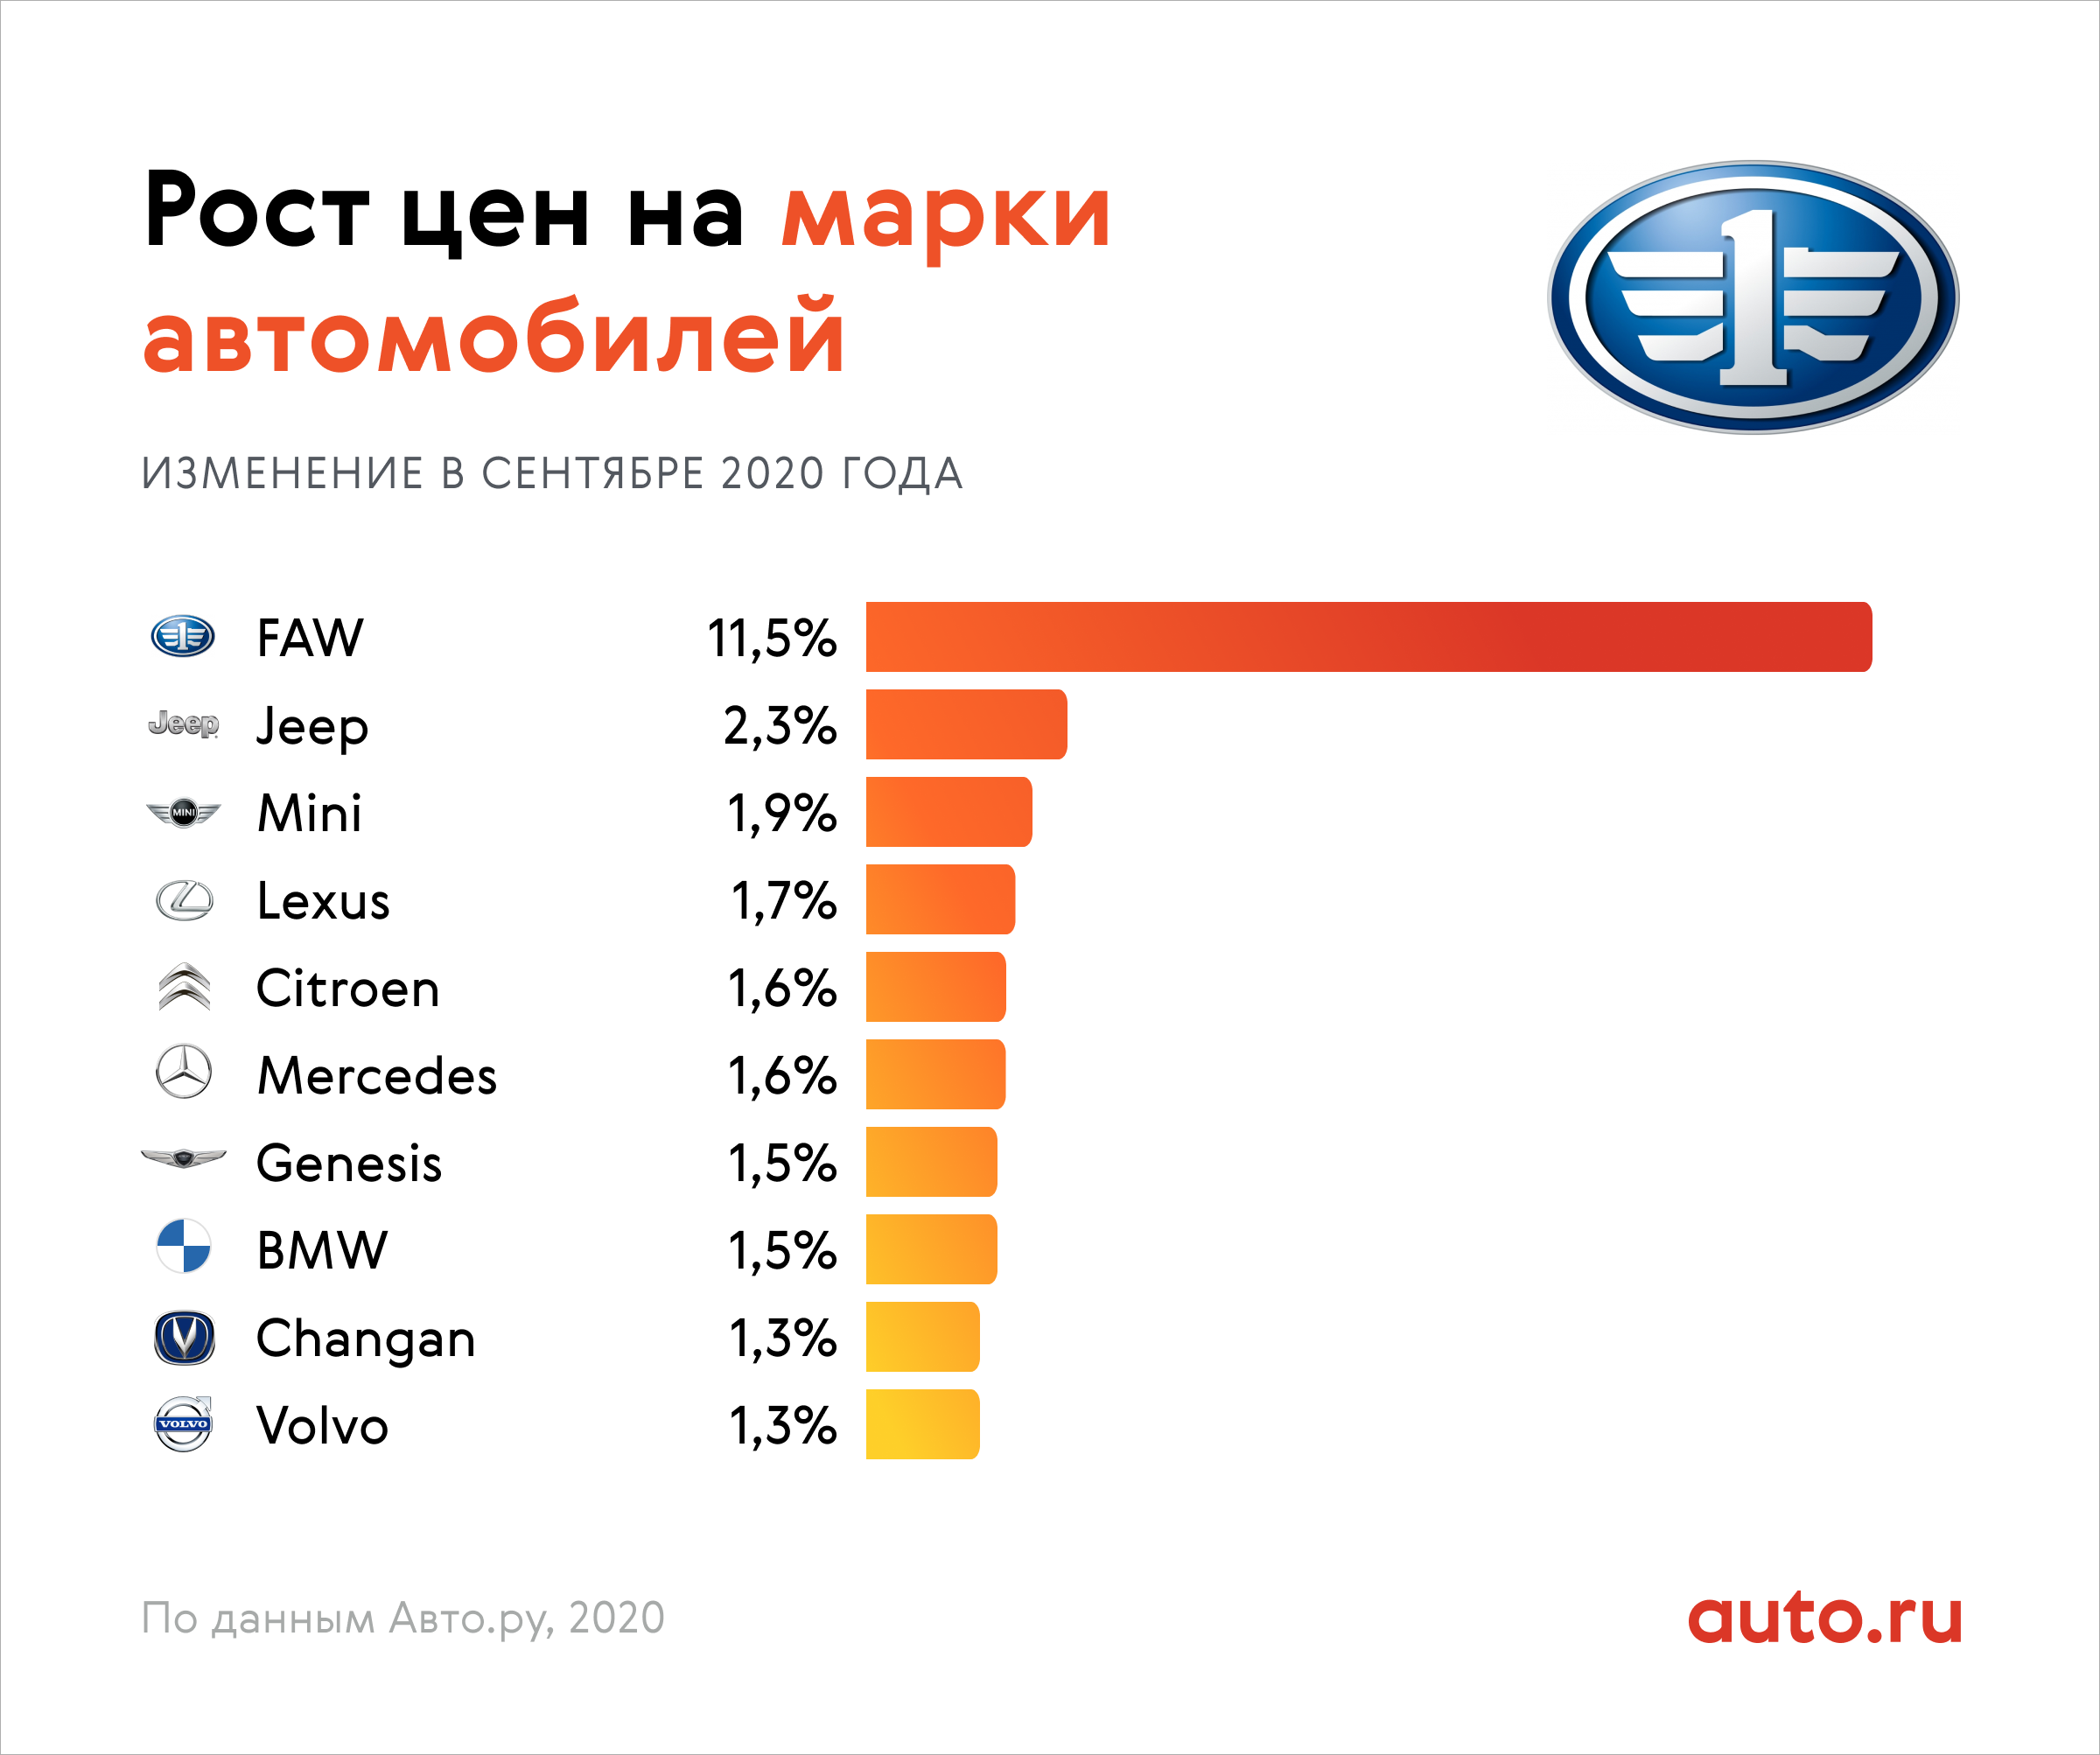 Рейтинг новых авто до 500 000 рублей: топ-10 лучших